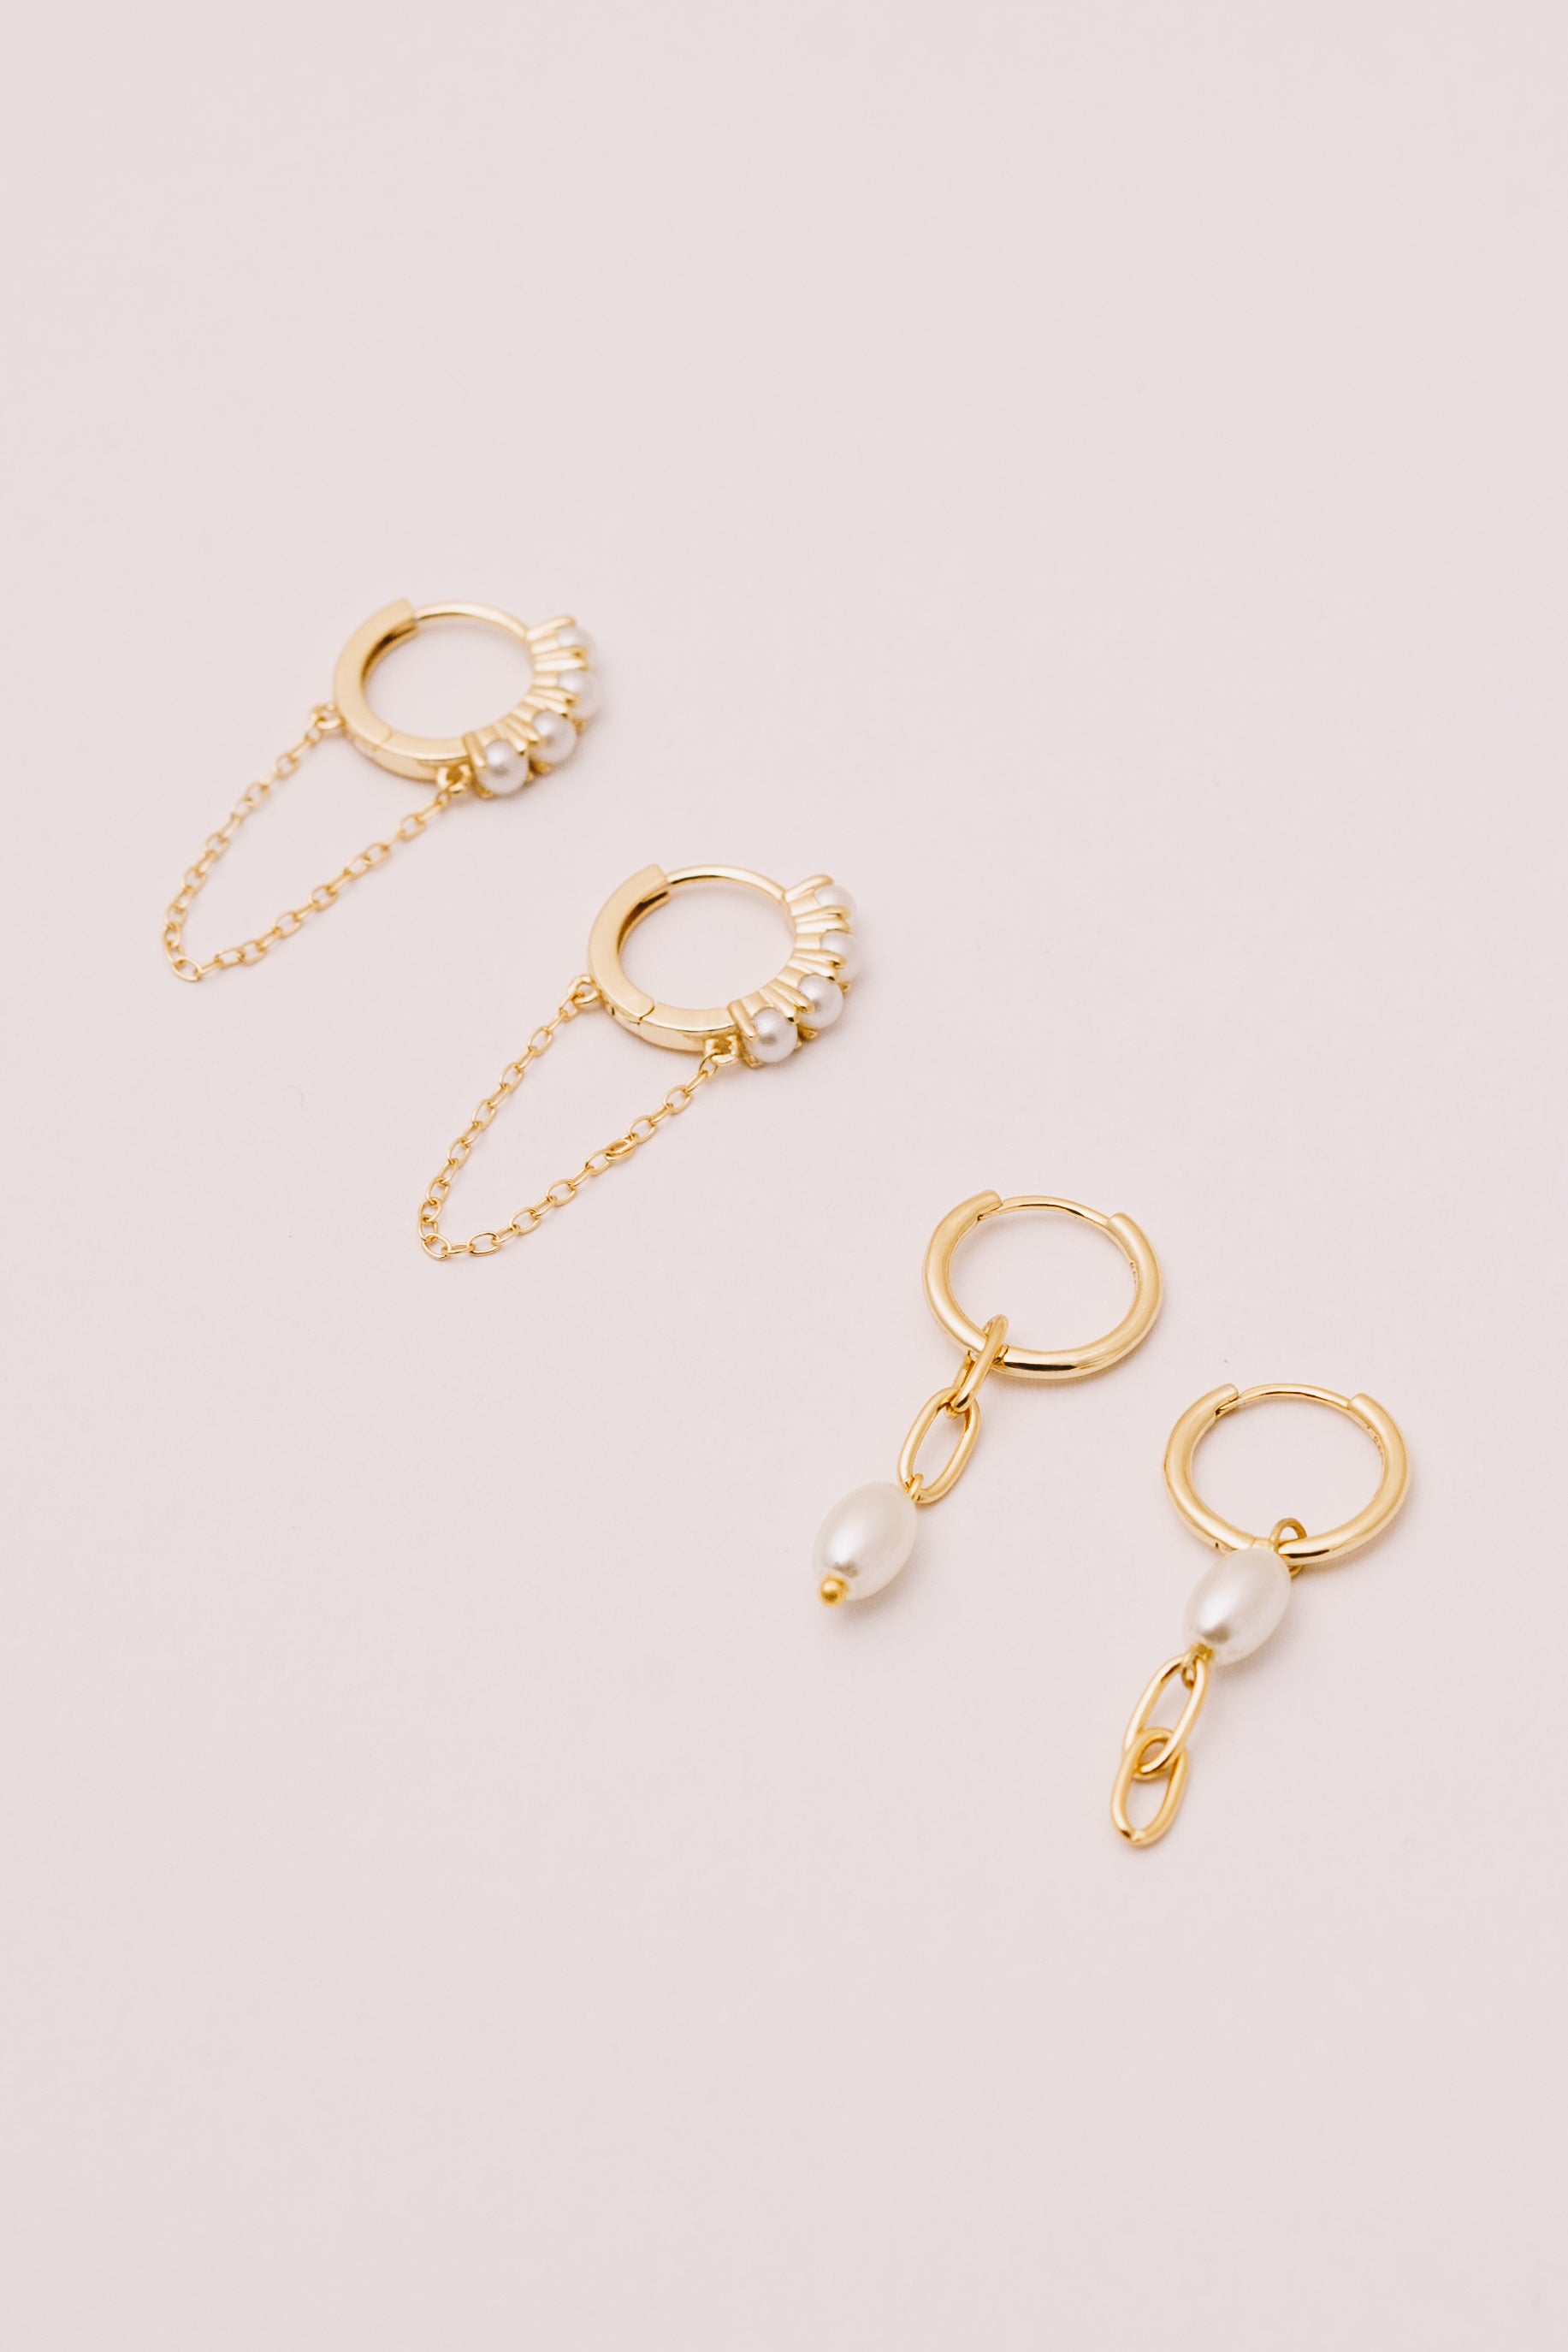 pearl huggie hoop earrings with chain dangles and asymmetrical pearl dangle hoops